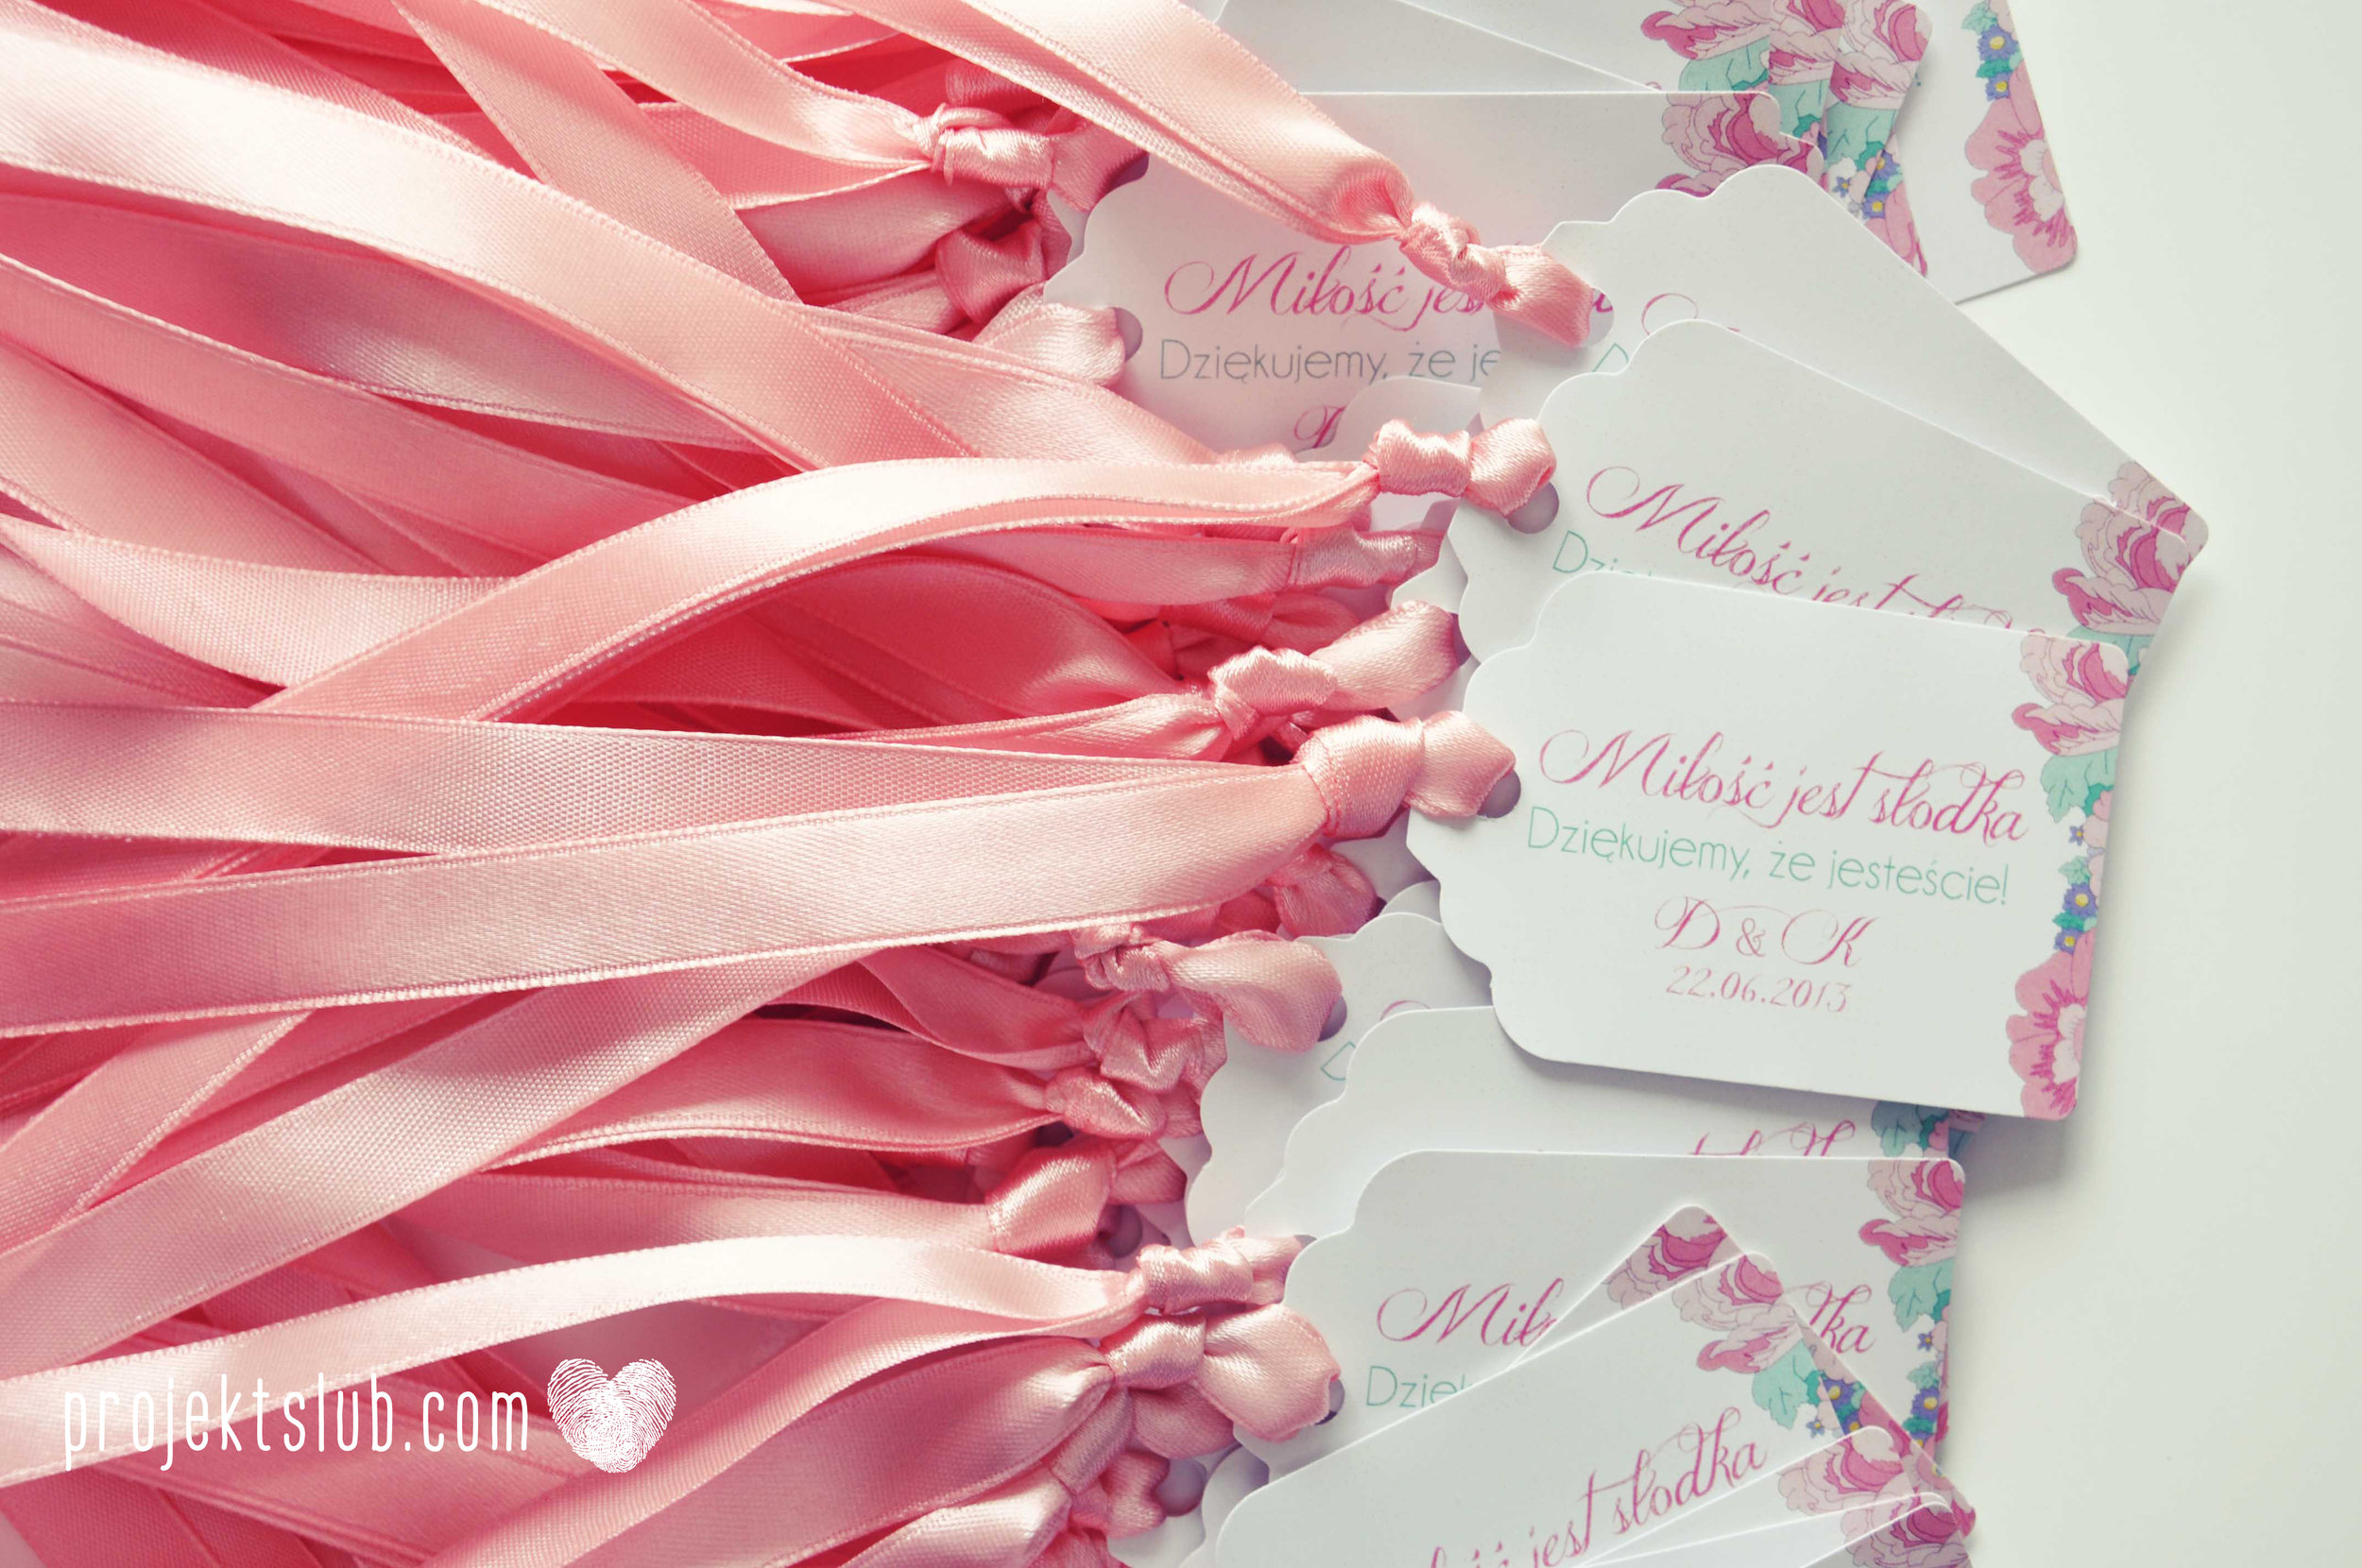 Zaproszenia  ślubne pasteove kwiaty ze wstążką wyjątkowe oryginalne najpiękniejsza papeteria ślubna pudrowy róż mięta Projekt Ślub (6).jpg